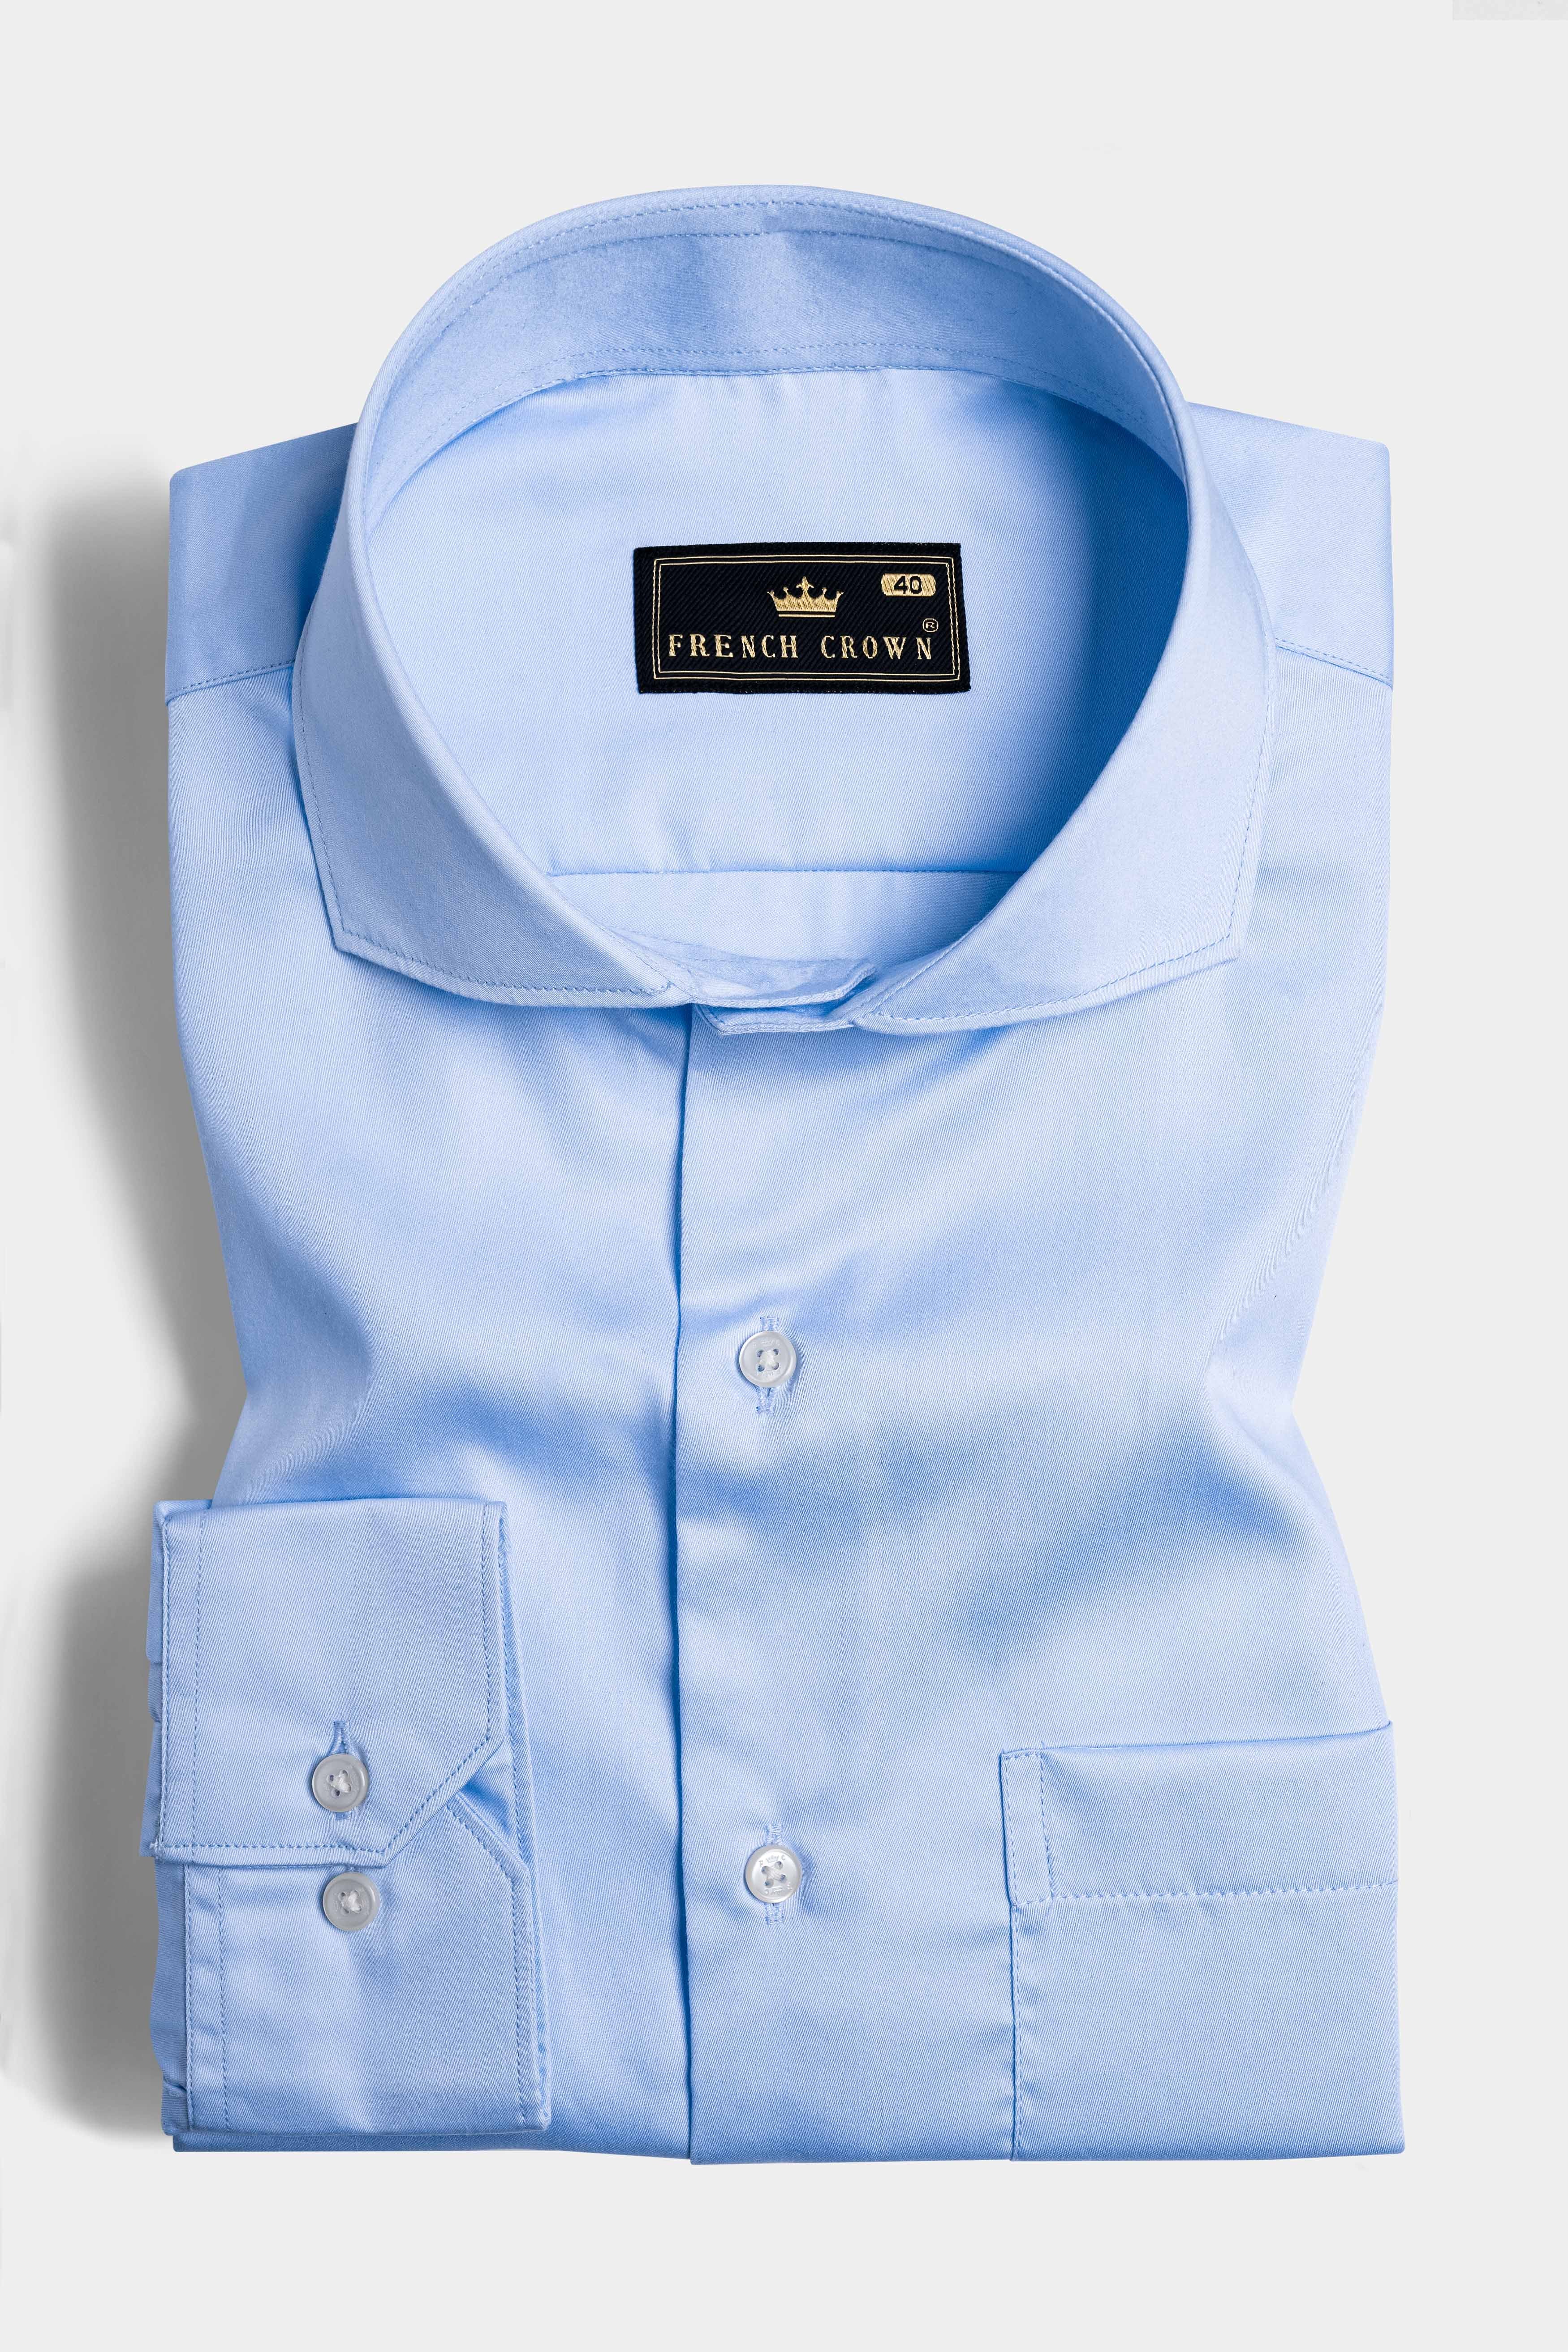 Spindle Blue Subtle Sheen Super Soft Premium Cotton Shirt